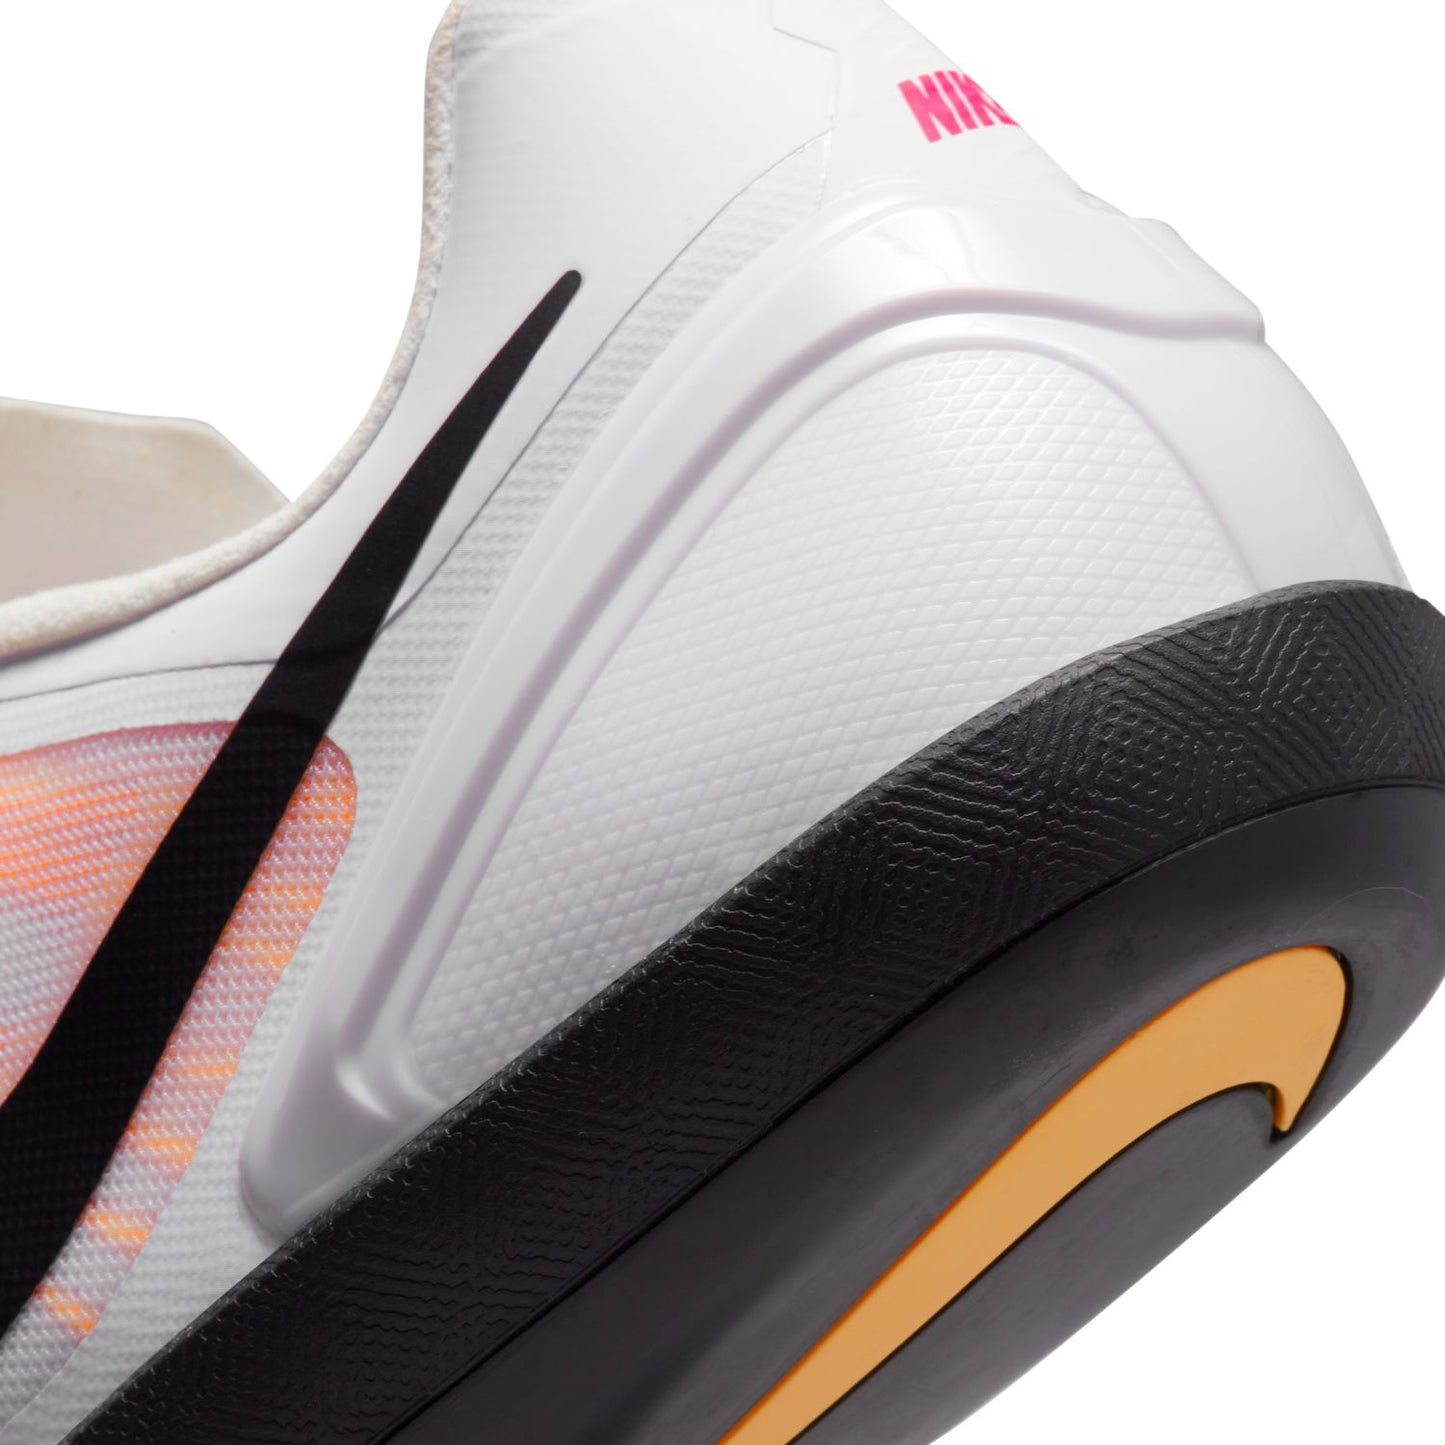 Unisex Nike Zoom Rotational 6